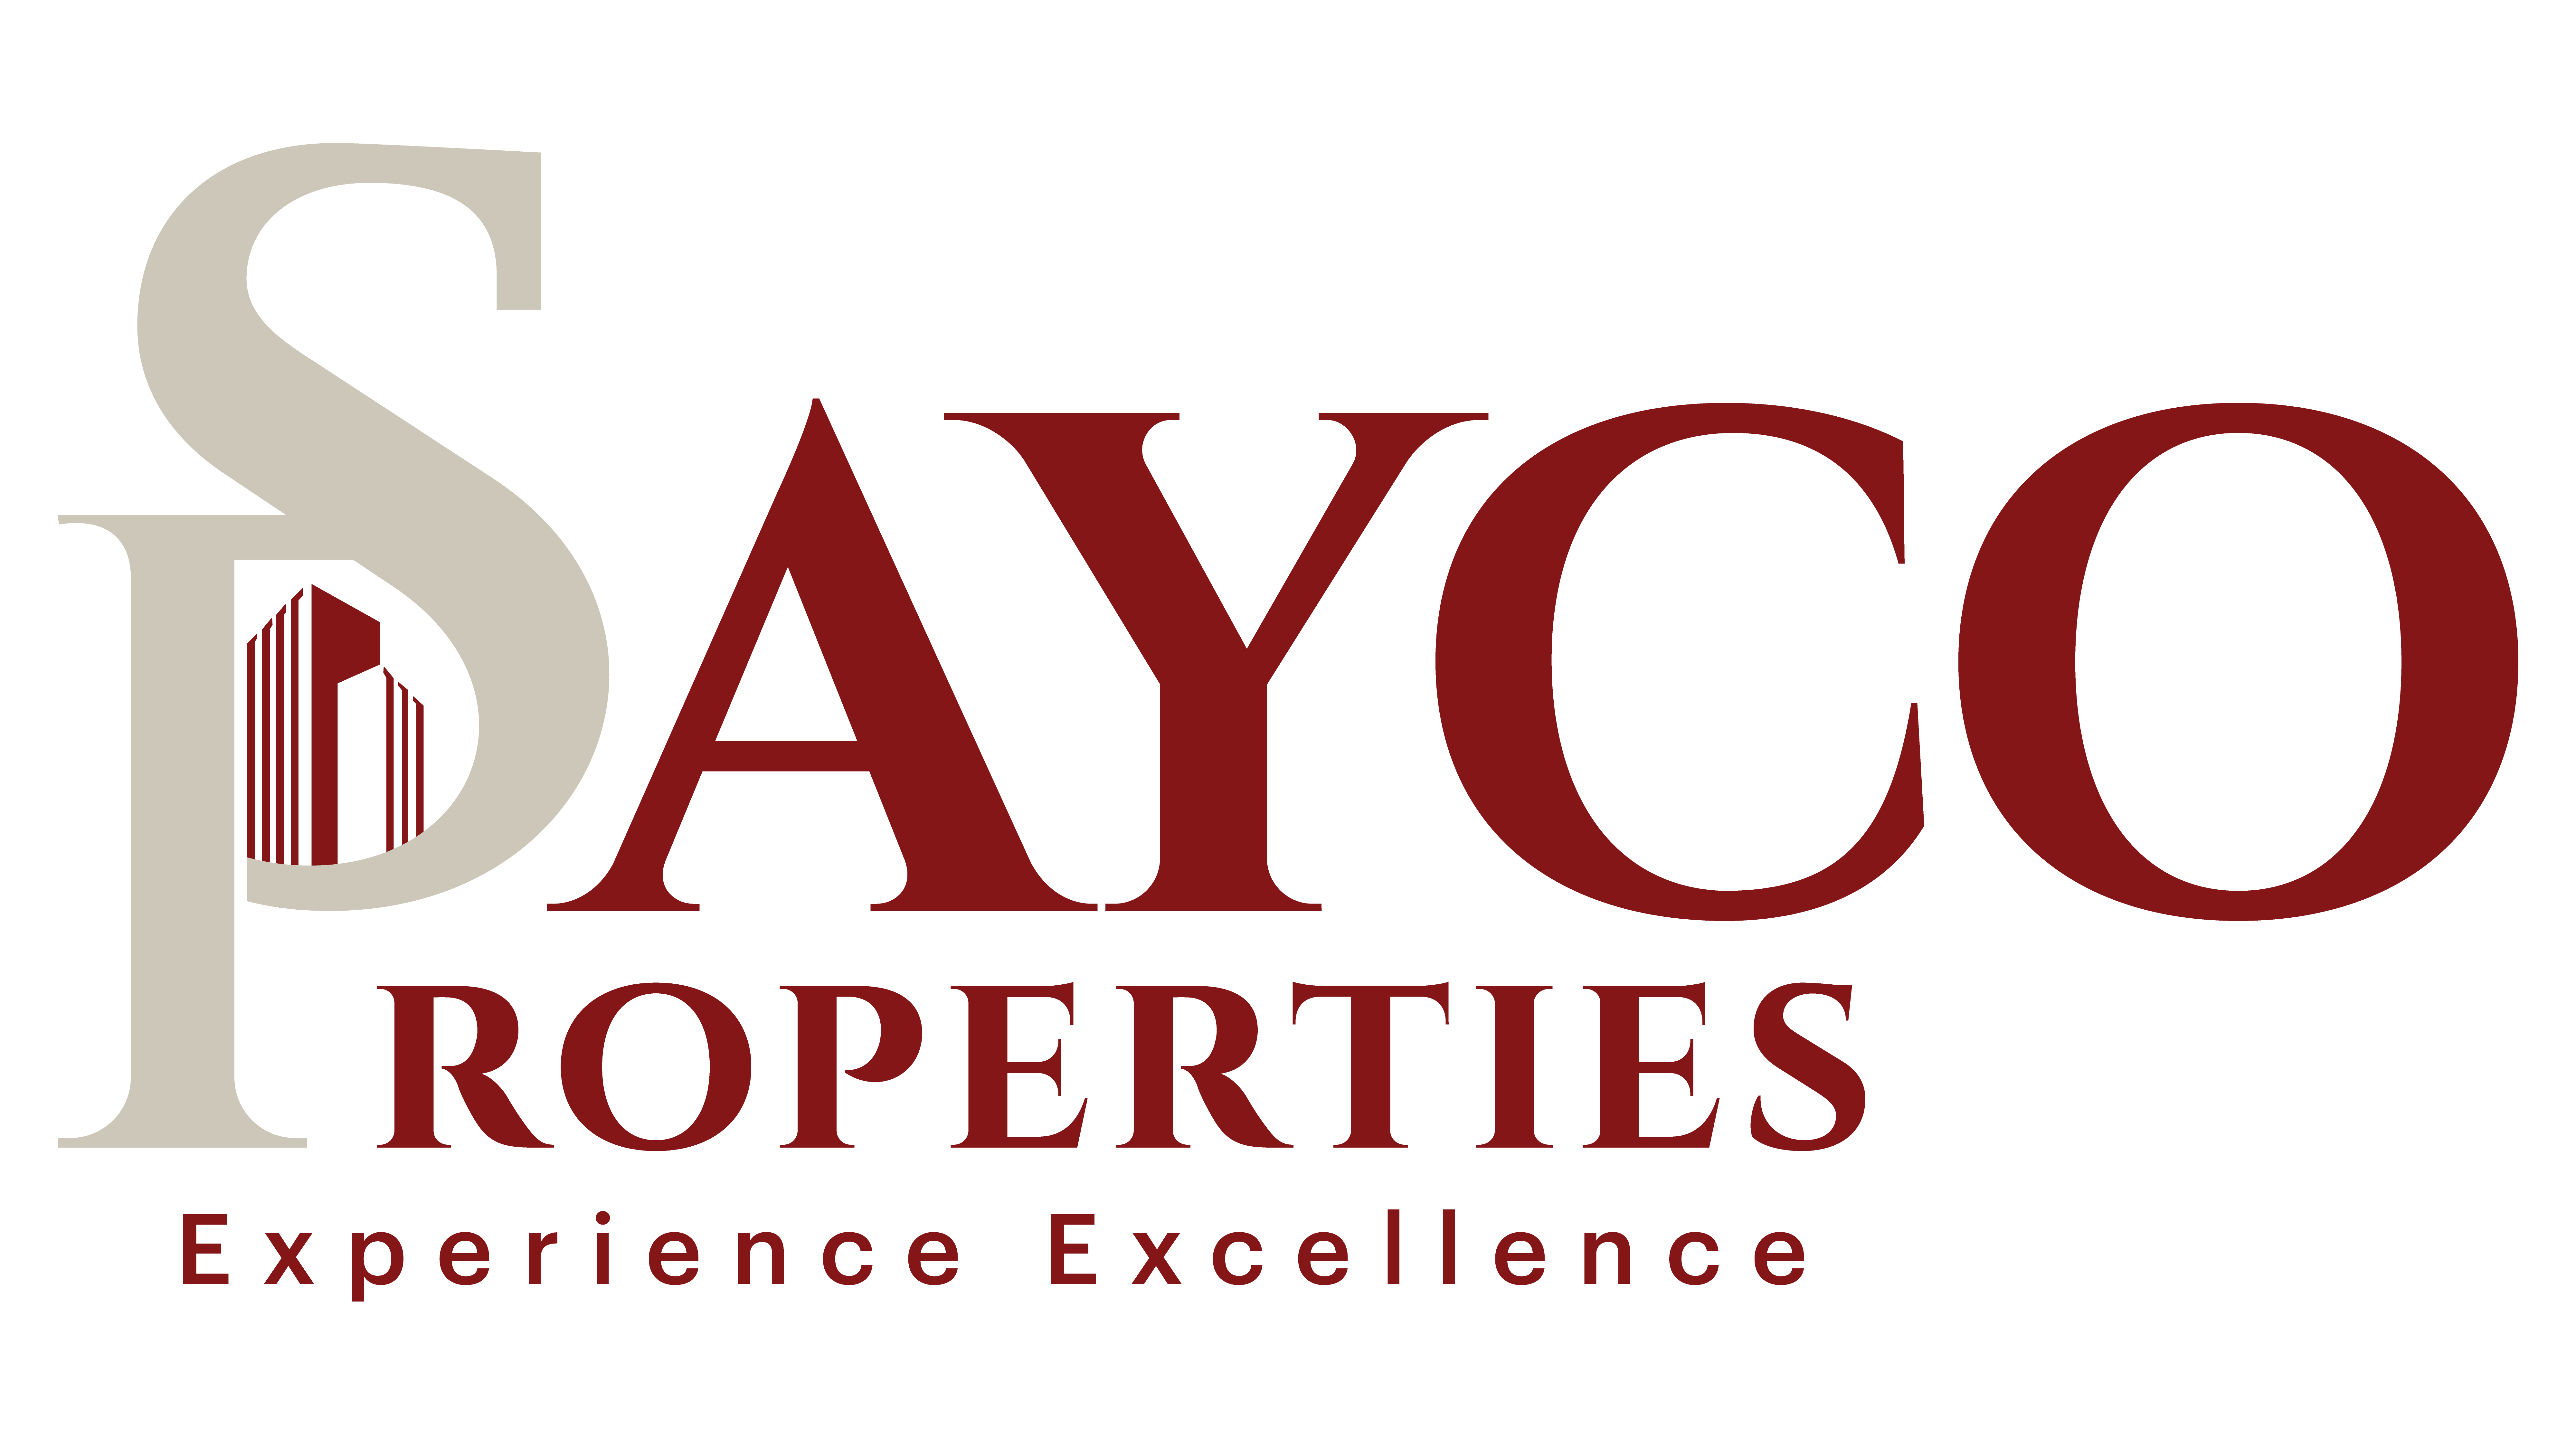 Sayco Holdings 